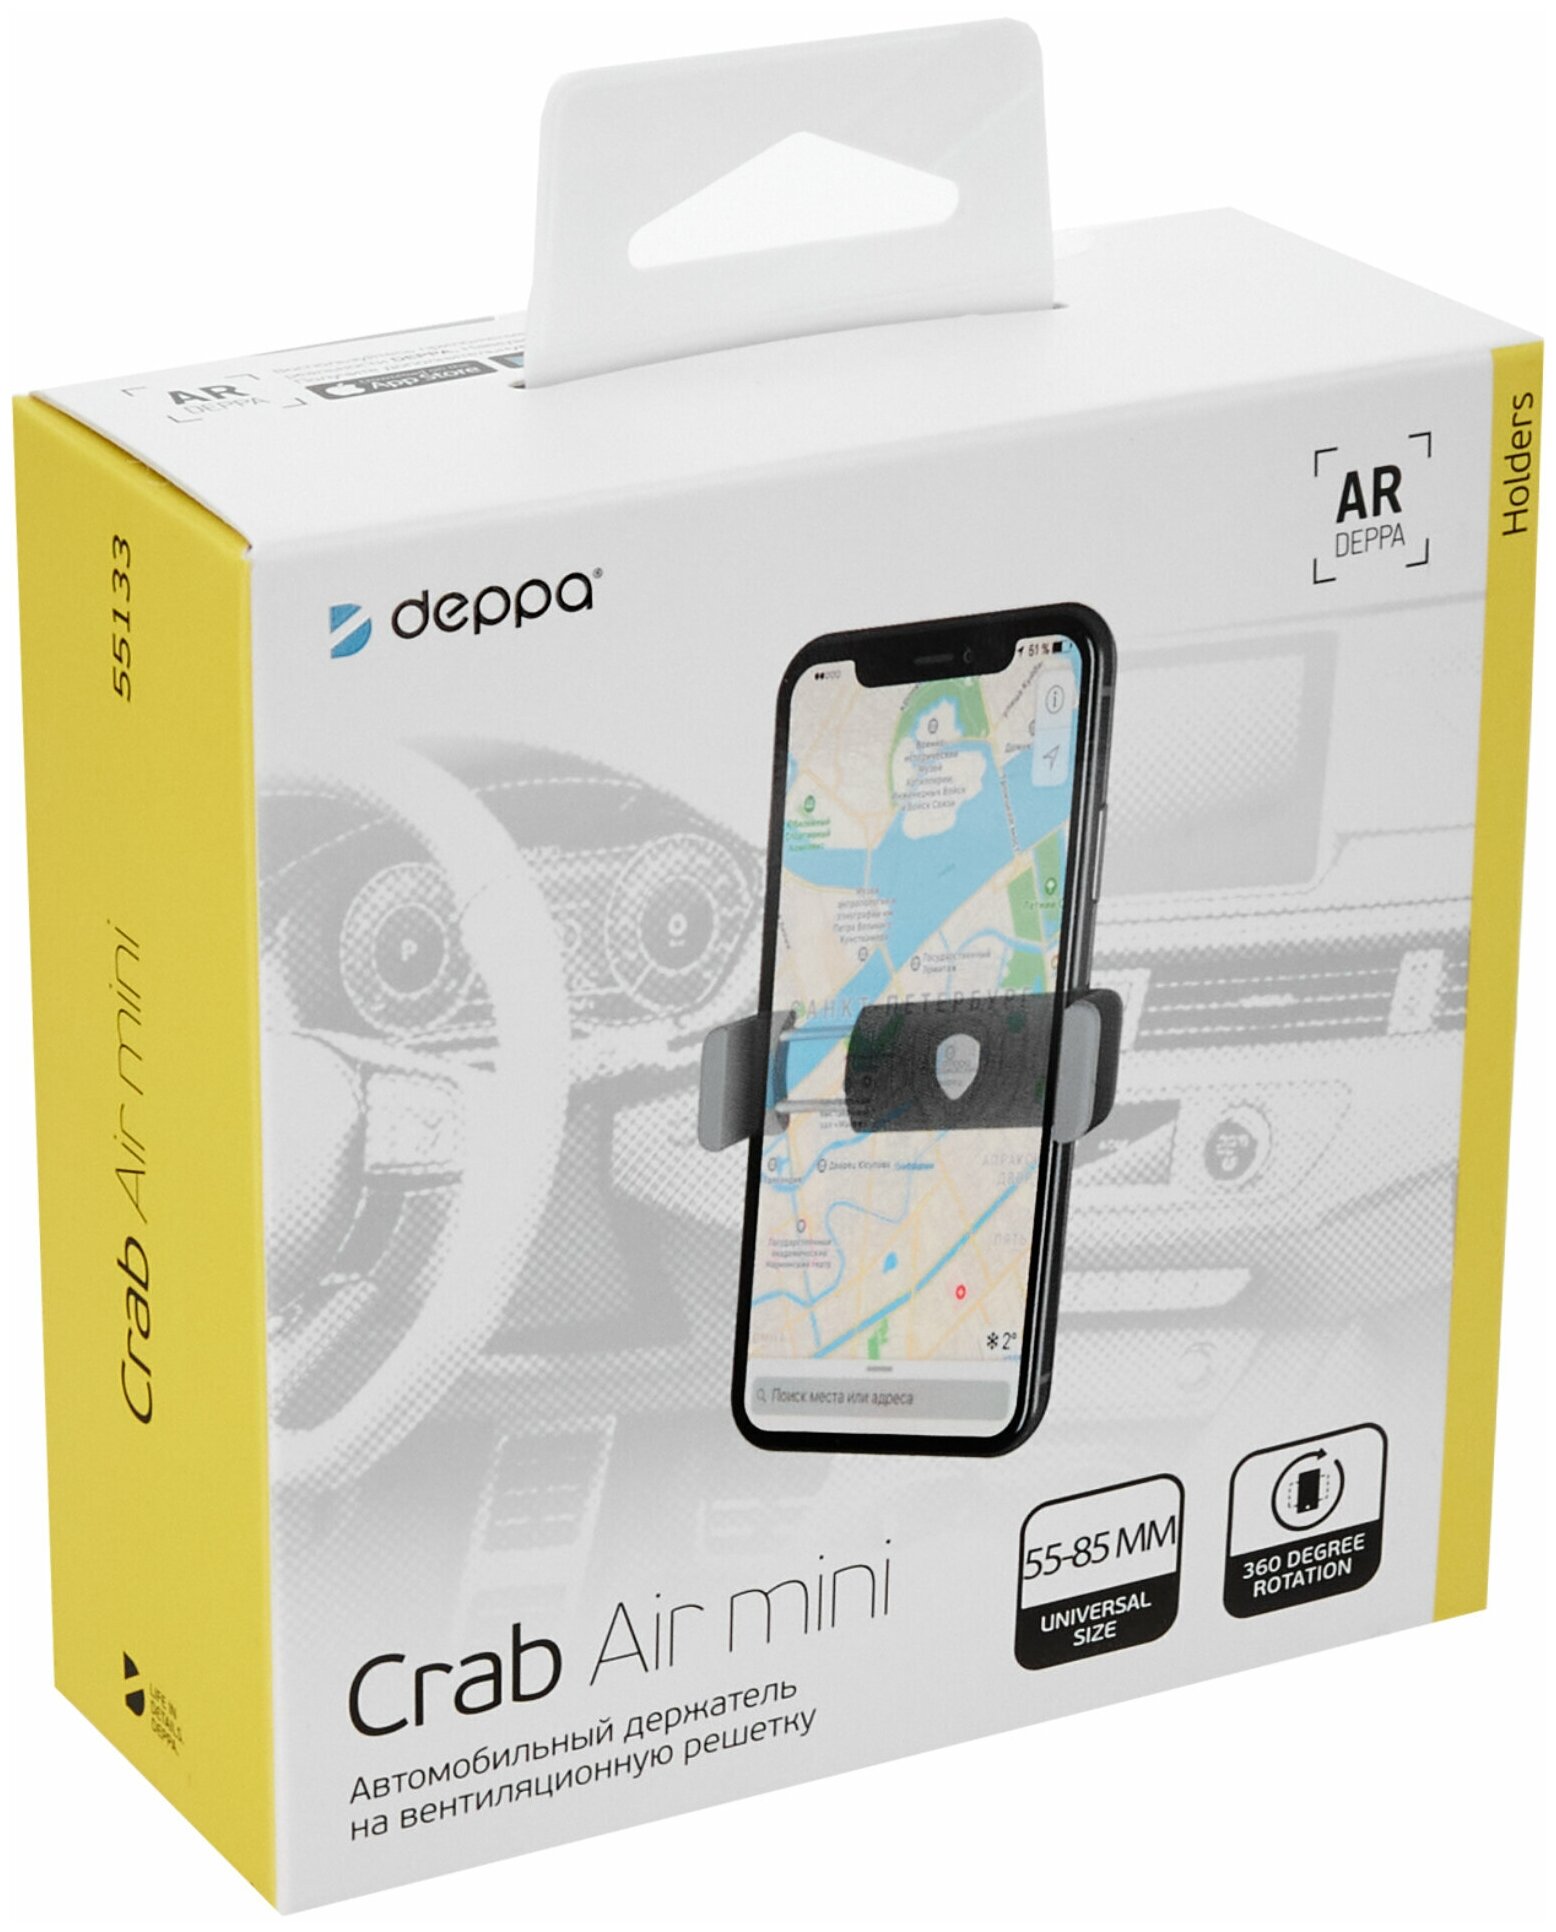 Держатель Deppa Crab Air mini